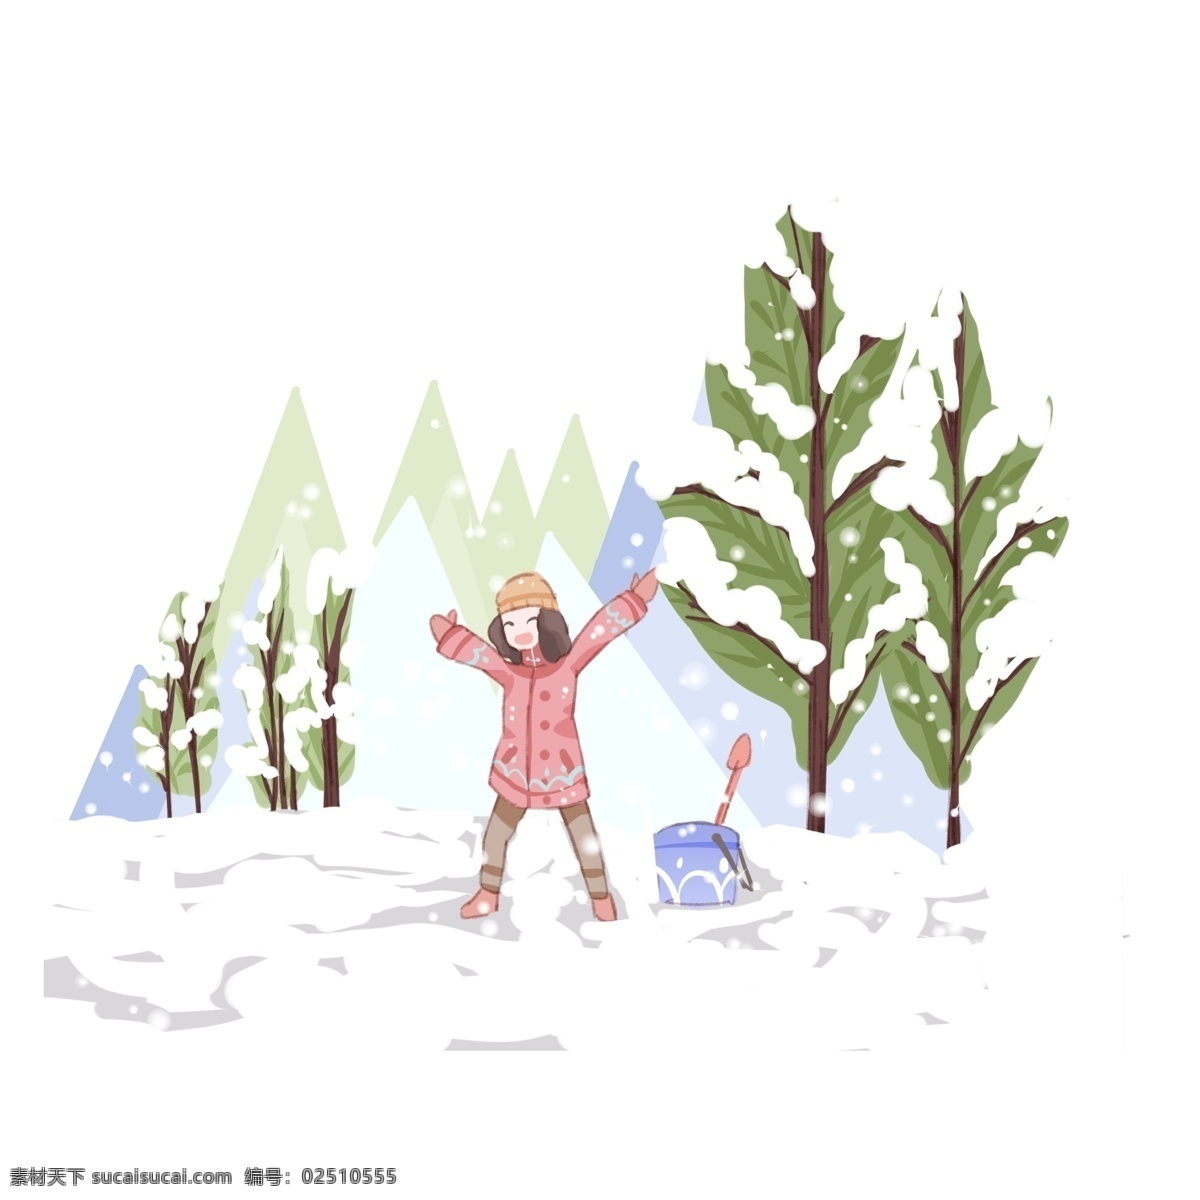 立冬 冬至 二十四节气 卡通 可爱 节气 雪景 插画 蓝色 下雪 玩雪 开心 森林 树木 植物 冬天插画